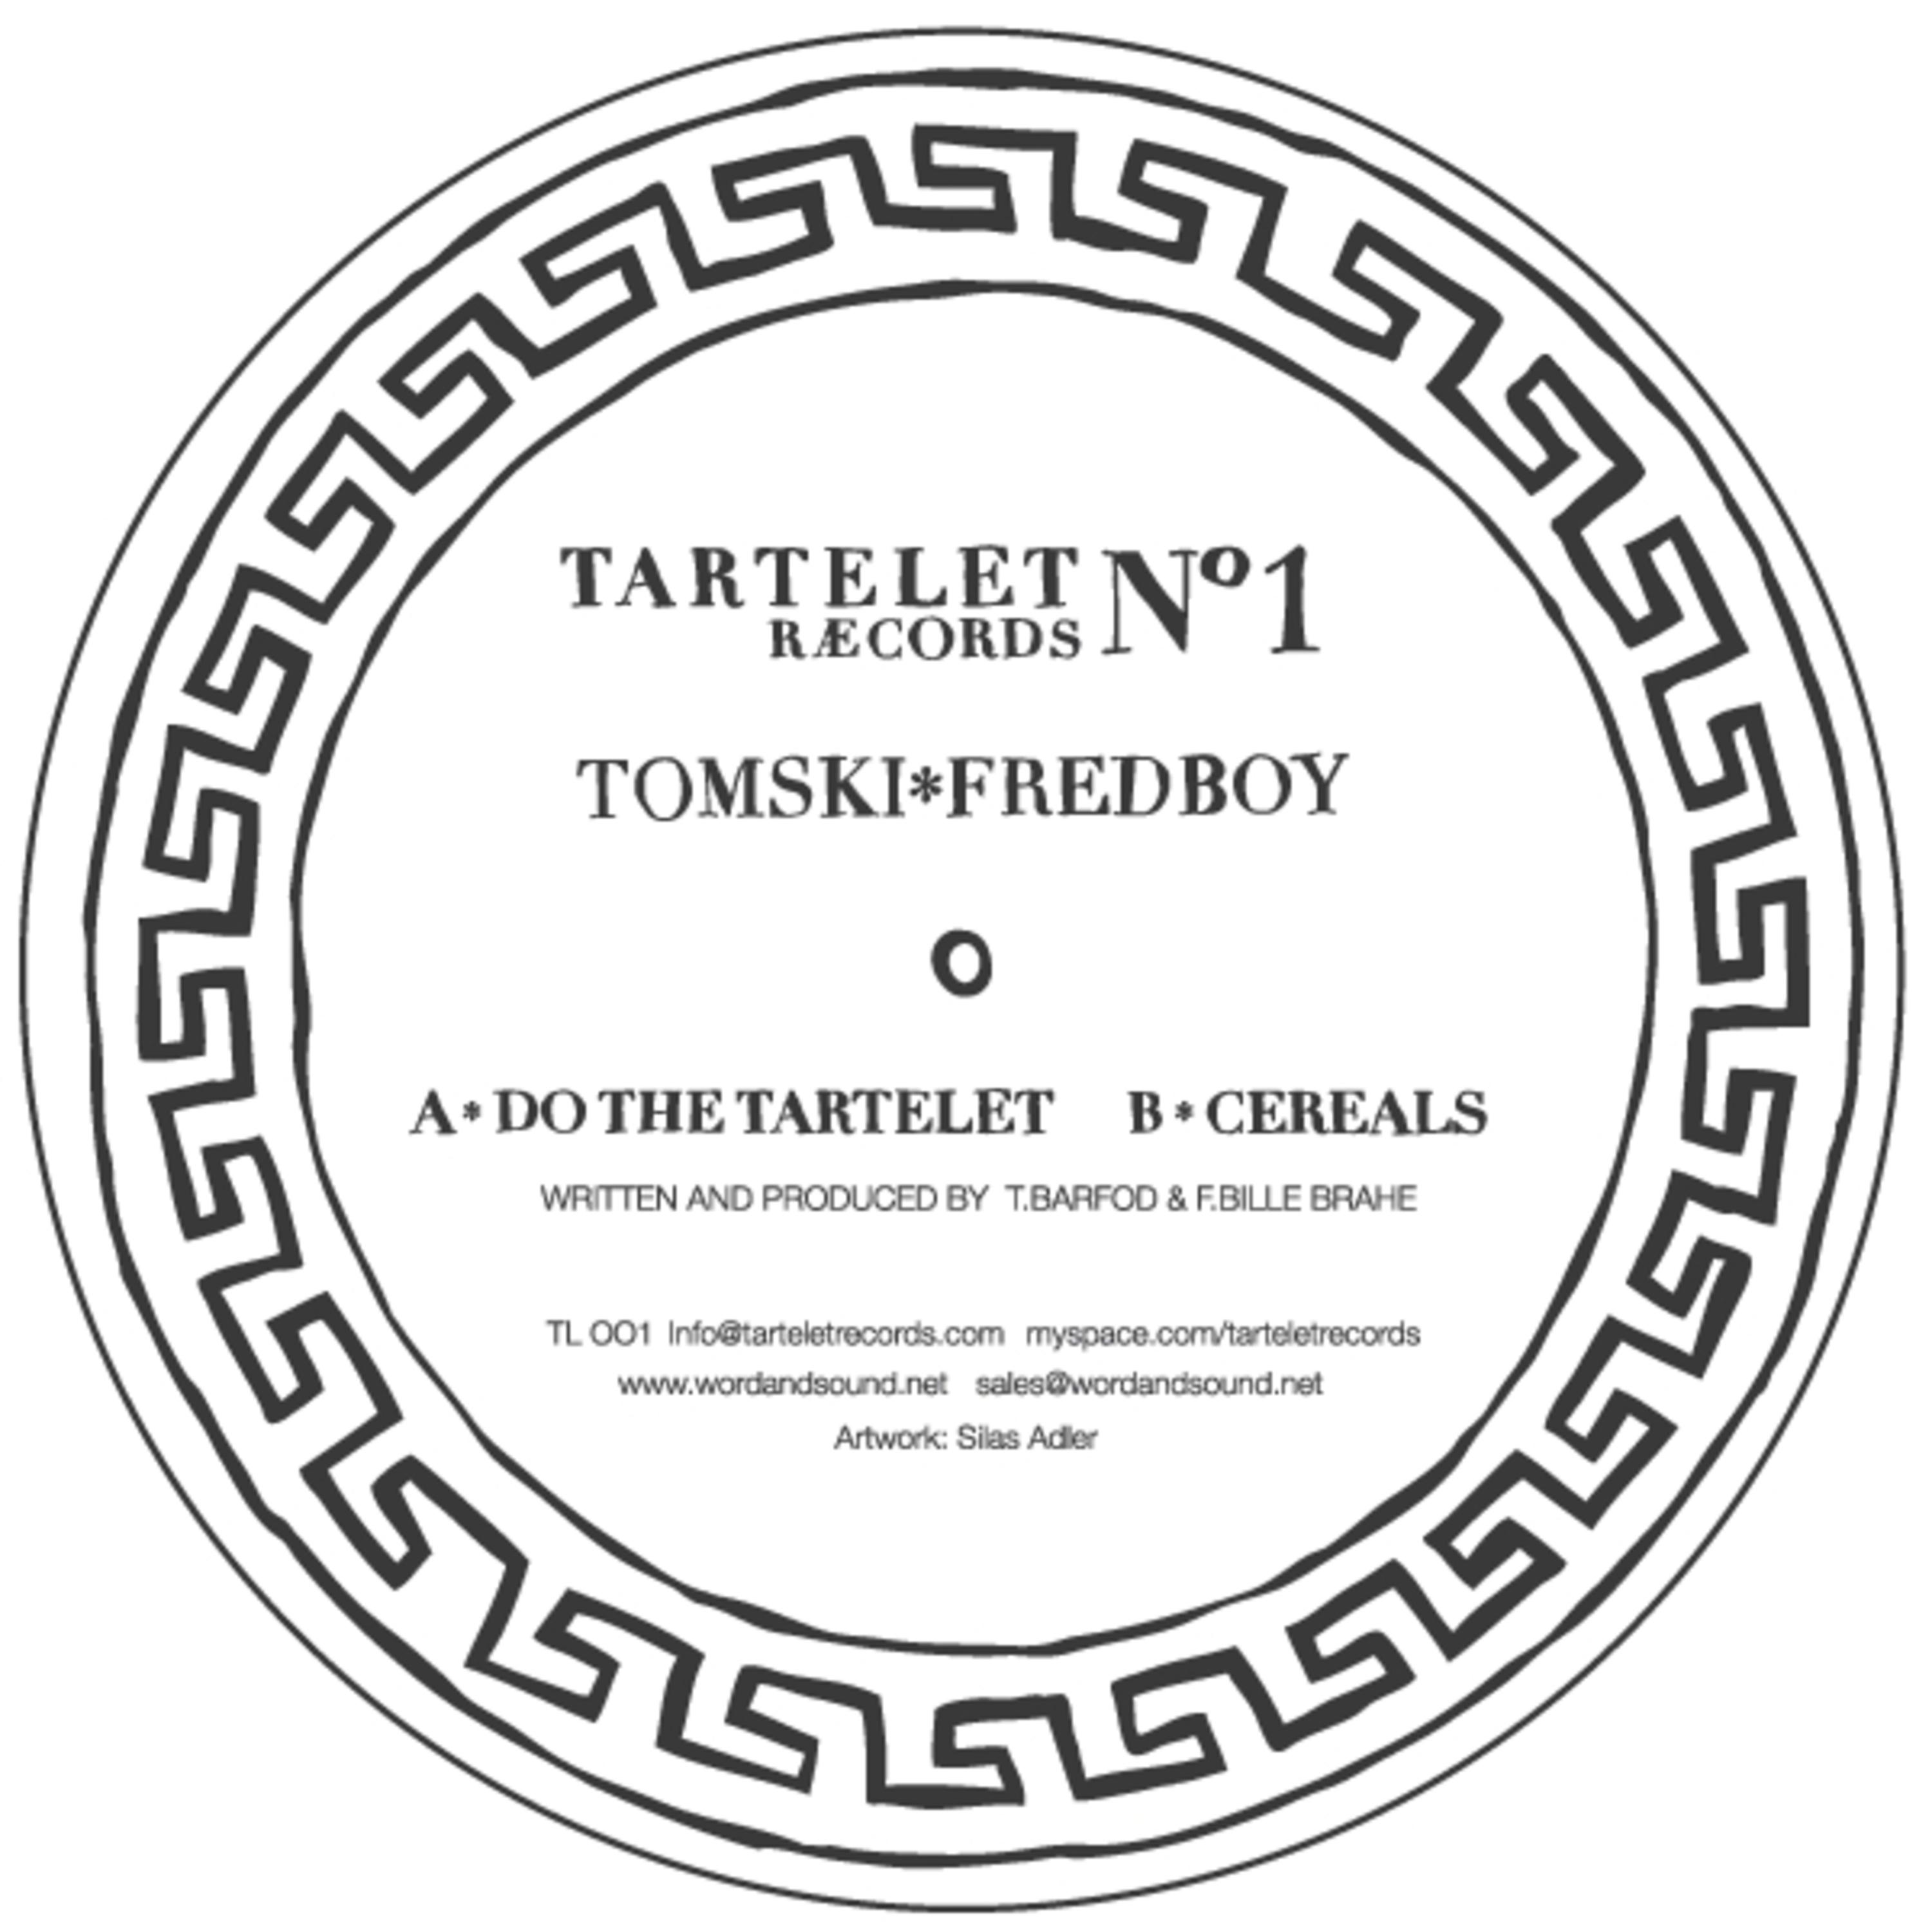 Do The Tartelet